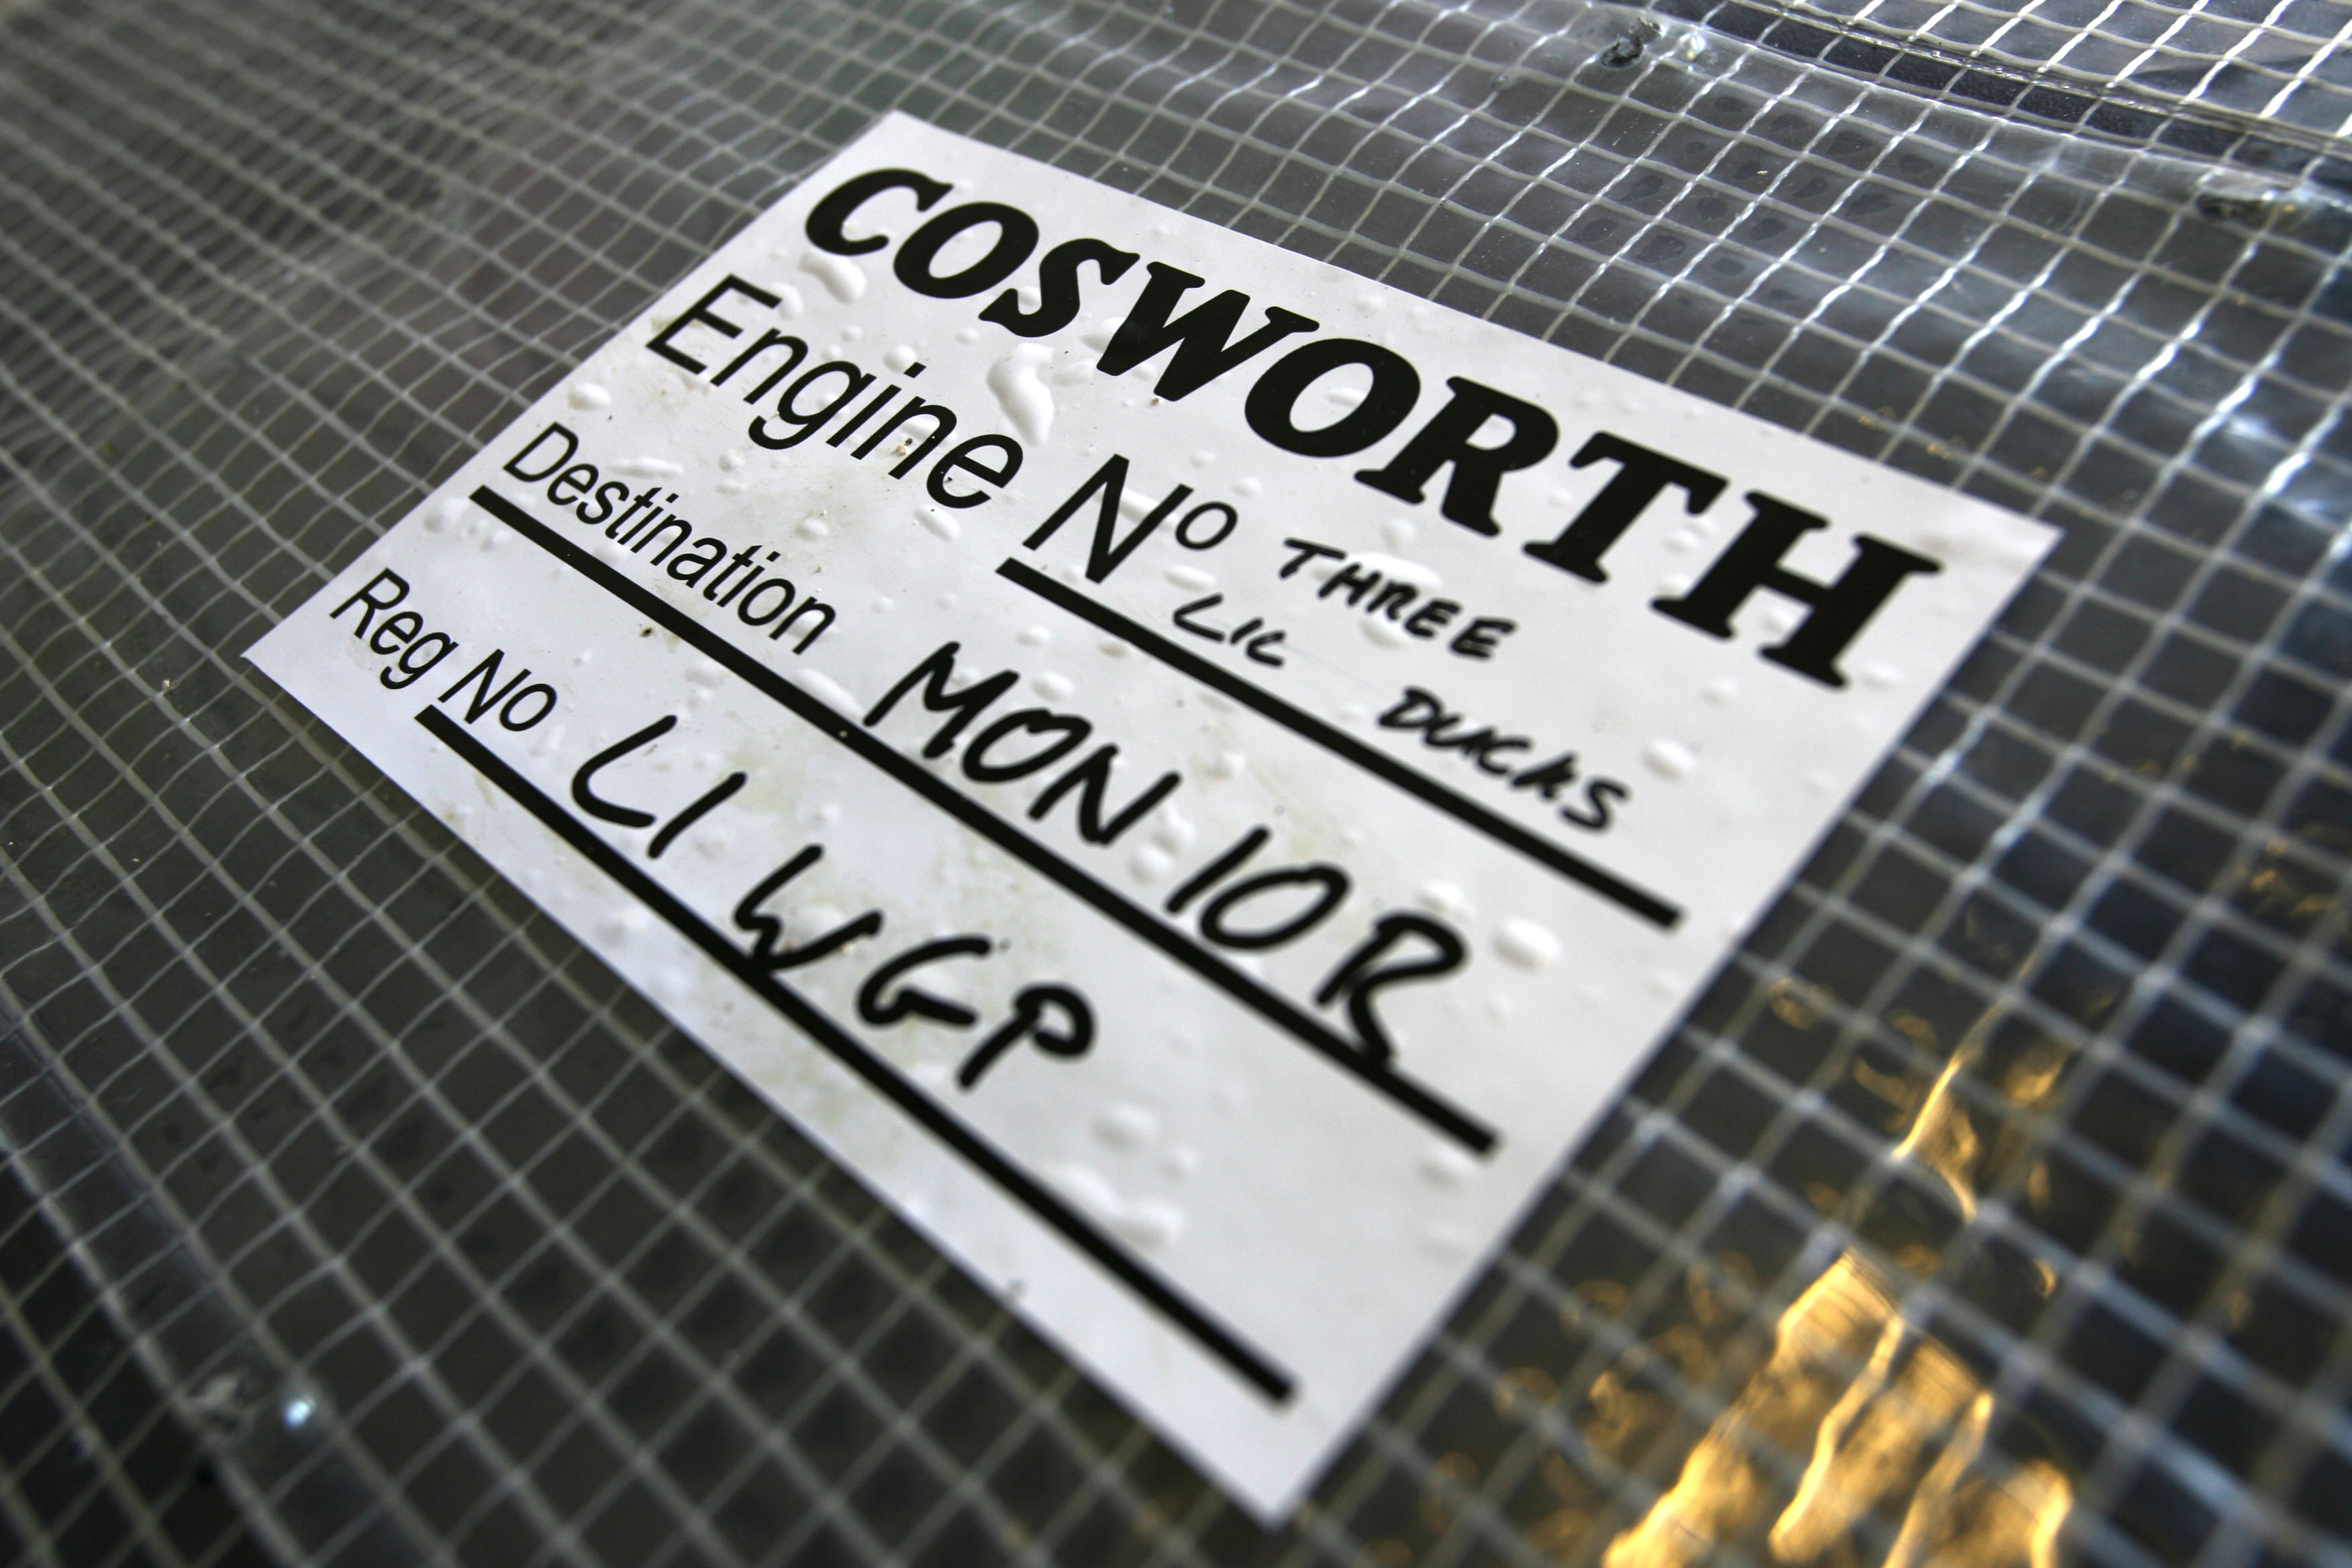 Cosworth in de verkoop